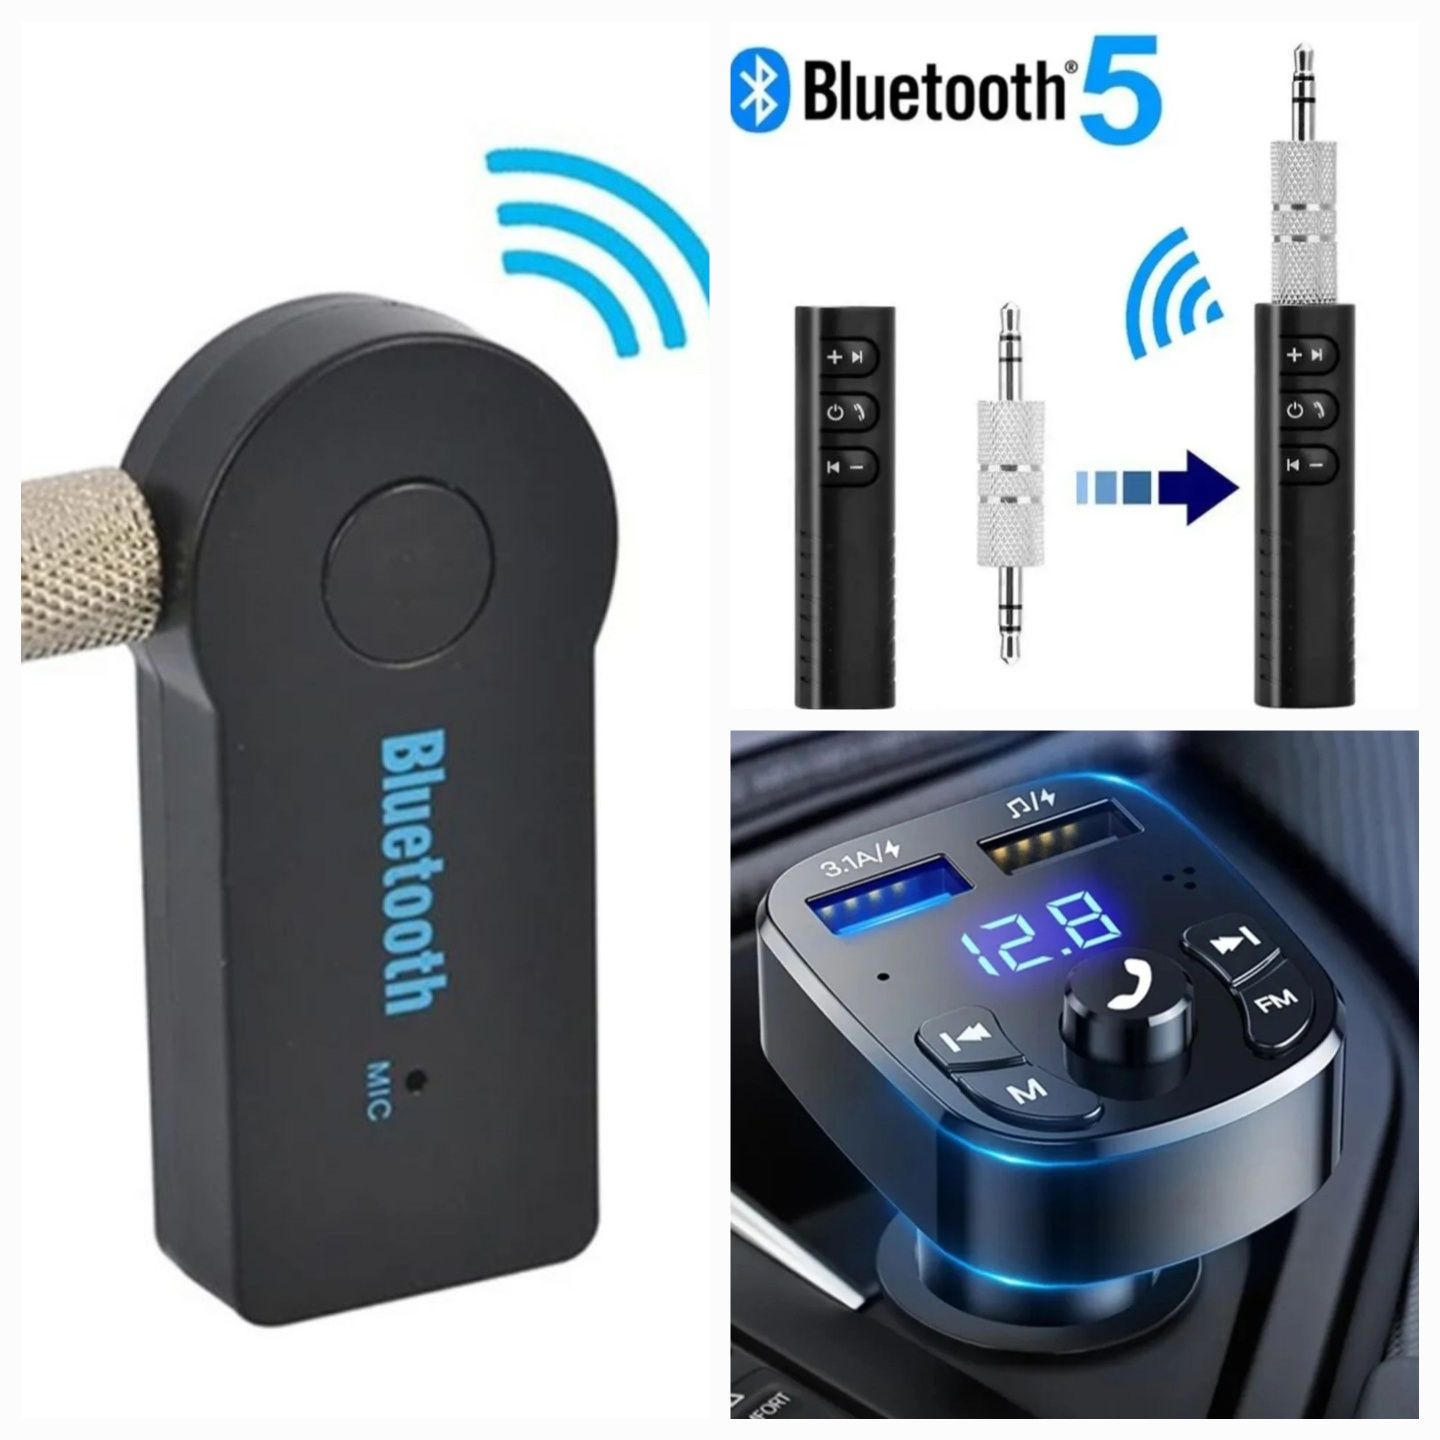 Bluetooth cu hands-free.